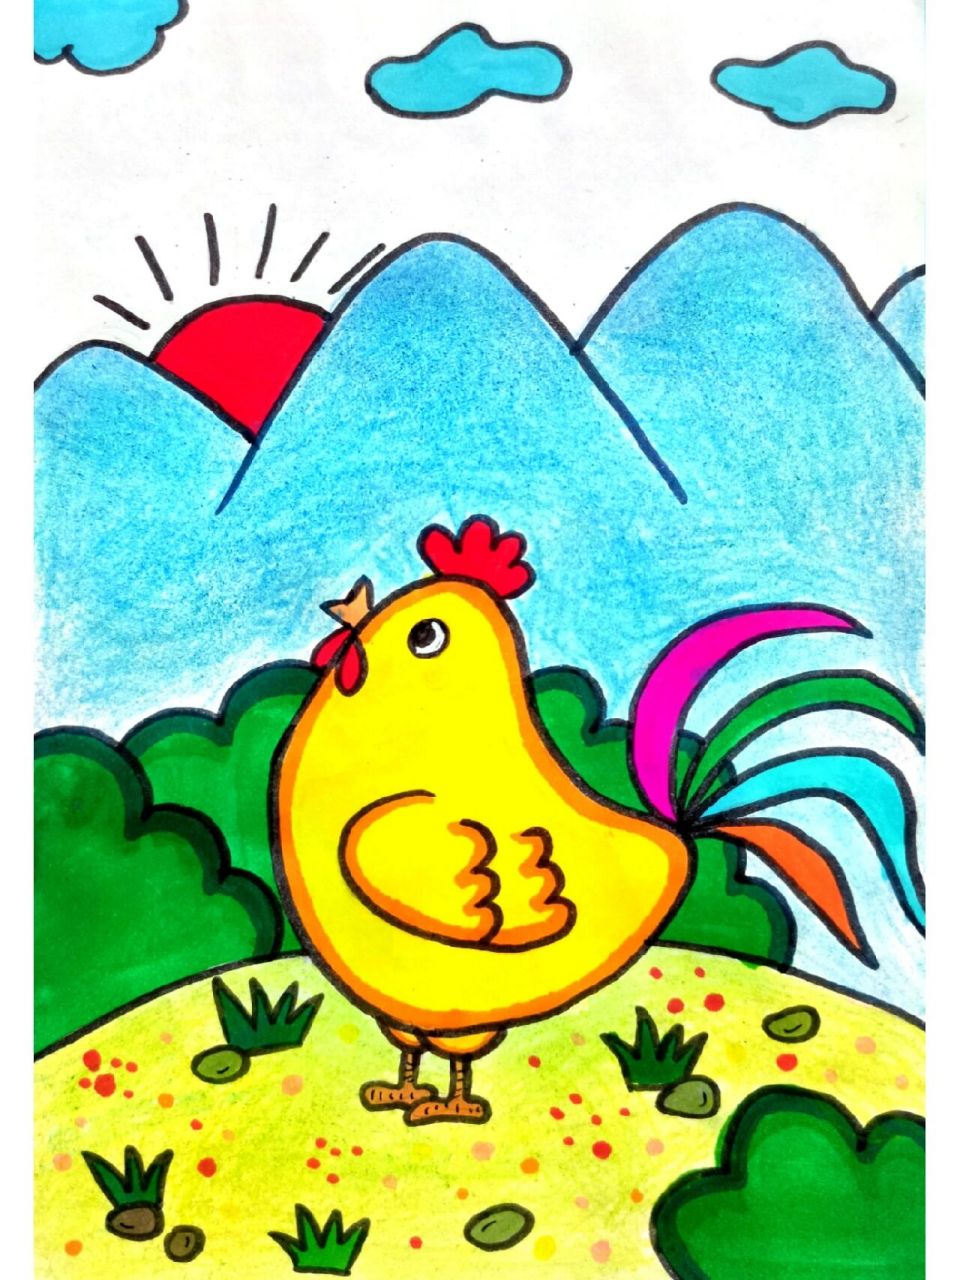 公鸡的简笔画彩色图片